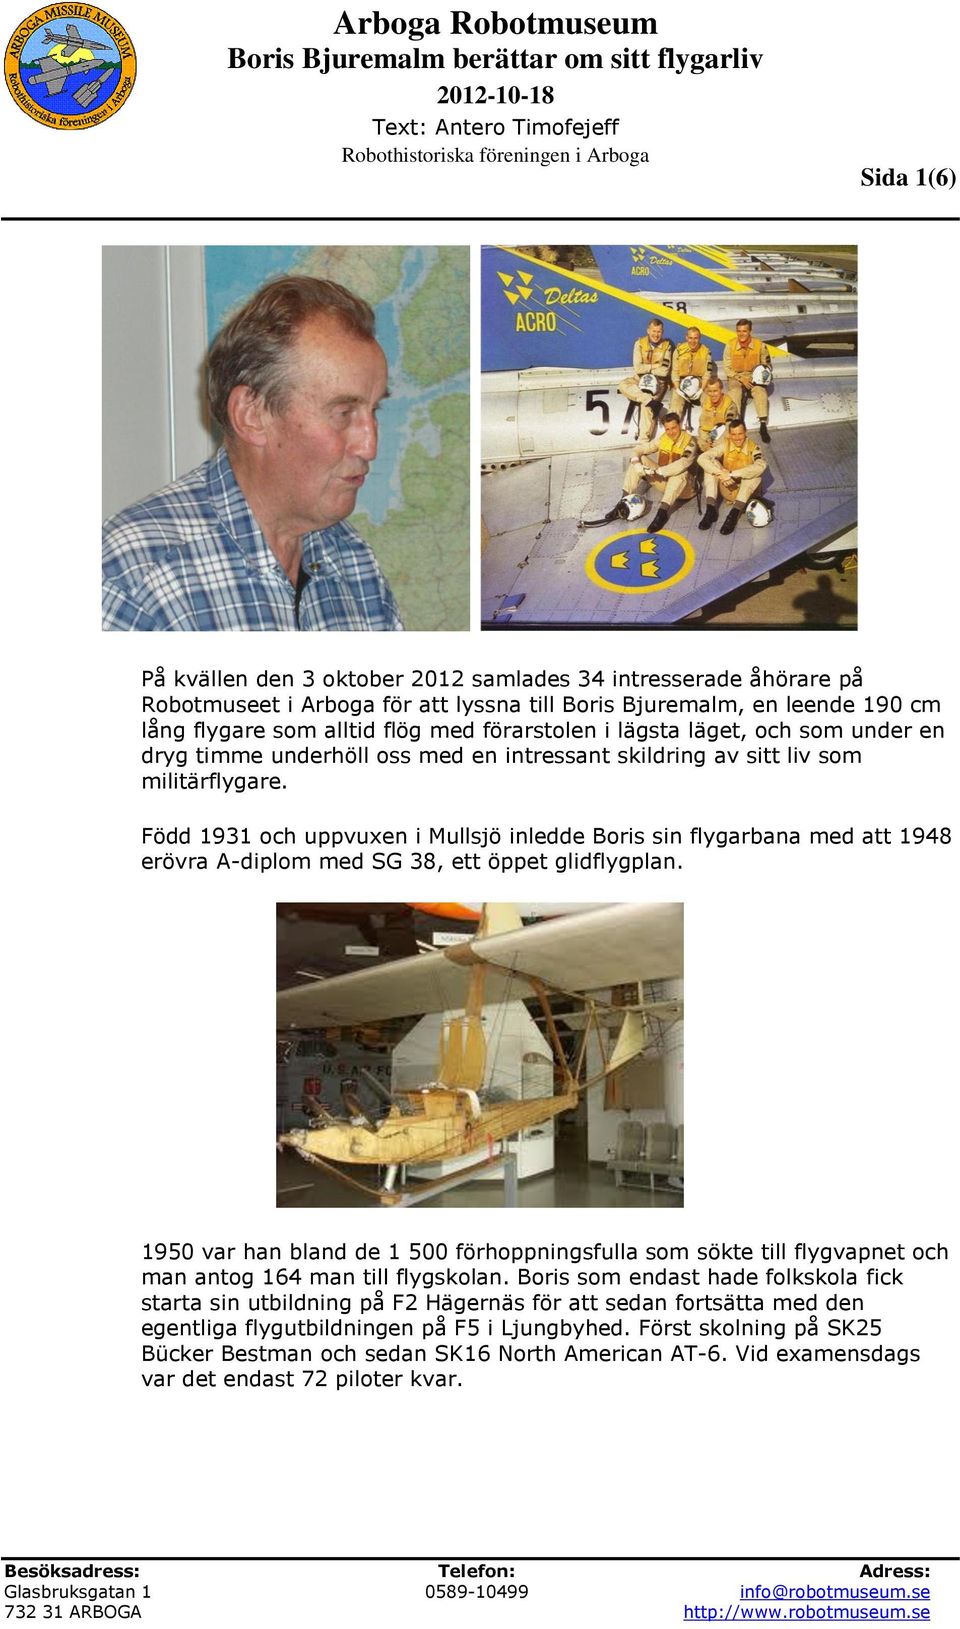 Född 1931 och uppvuxen i Mullsjö inledde Boris sin flygarbana med att 1948 erövra A-diplom med SG 38, ett öppet glidflygplan.